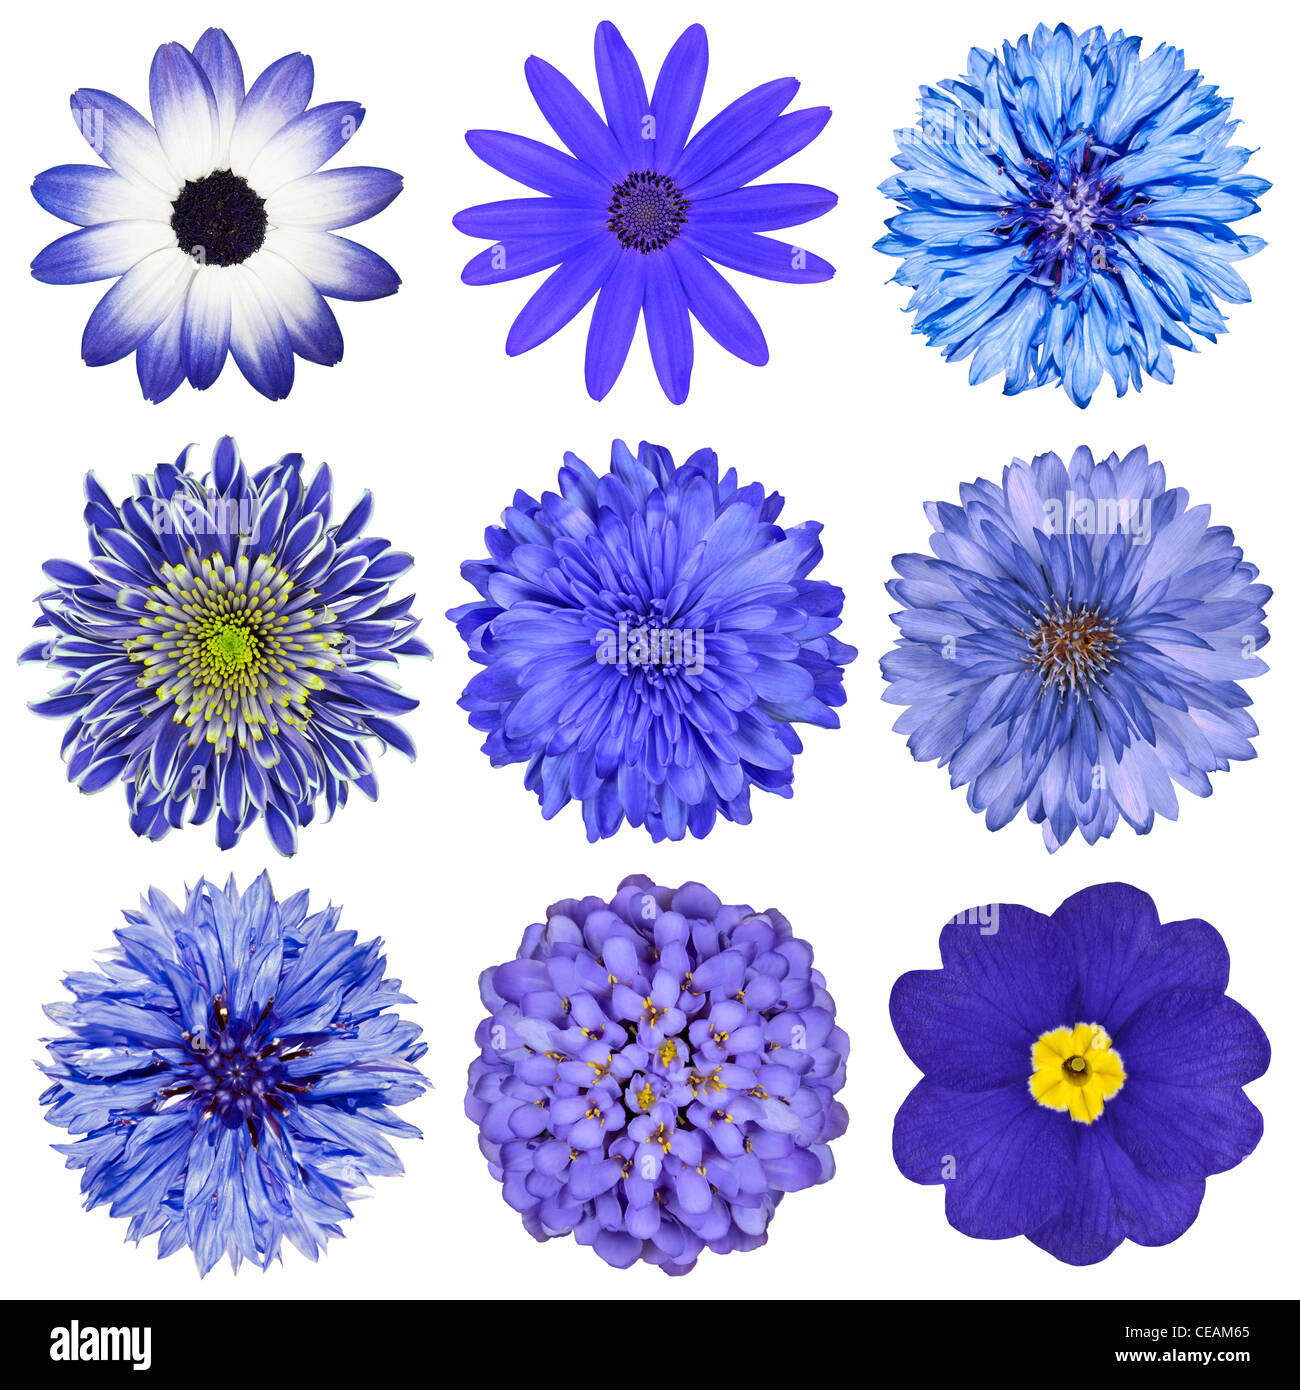 Verschiedene blaue Blumen-Auswahl, Isolated on White Background. Gänseblümchen, Chrystanthemum, Kornblume, Dahlie, Iberis, Primrose Stockfoto